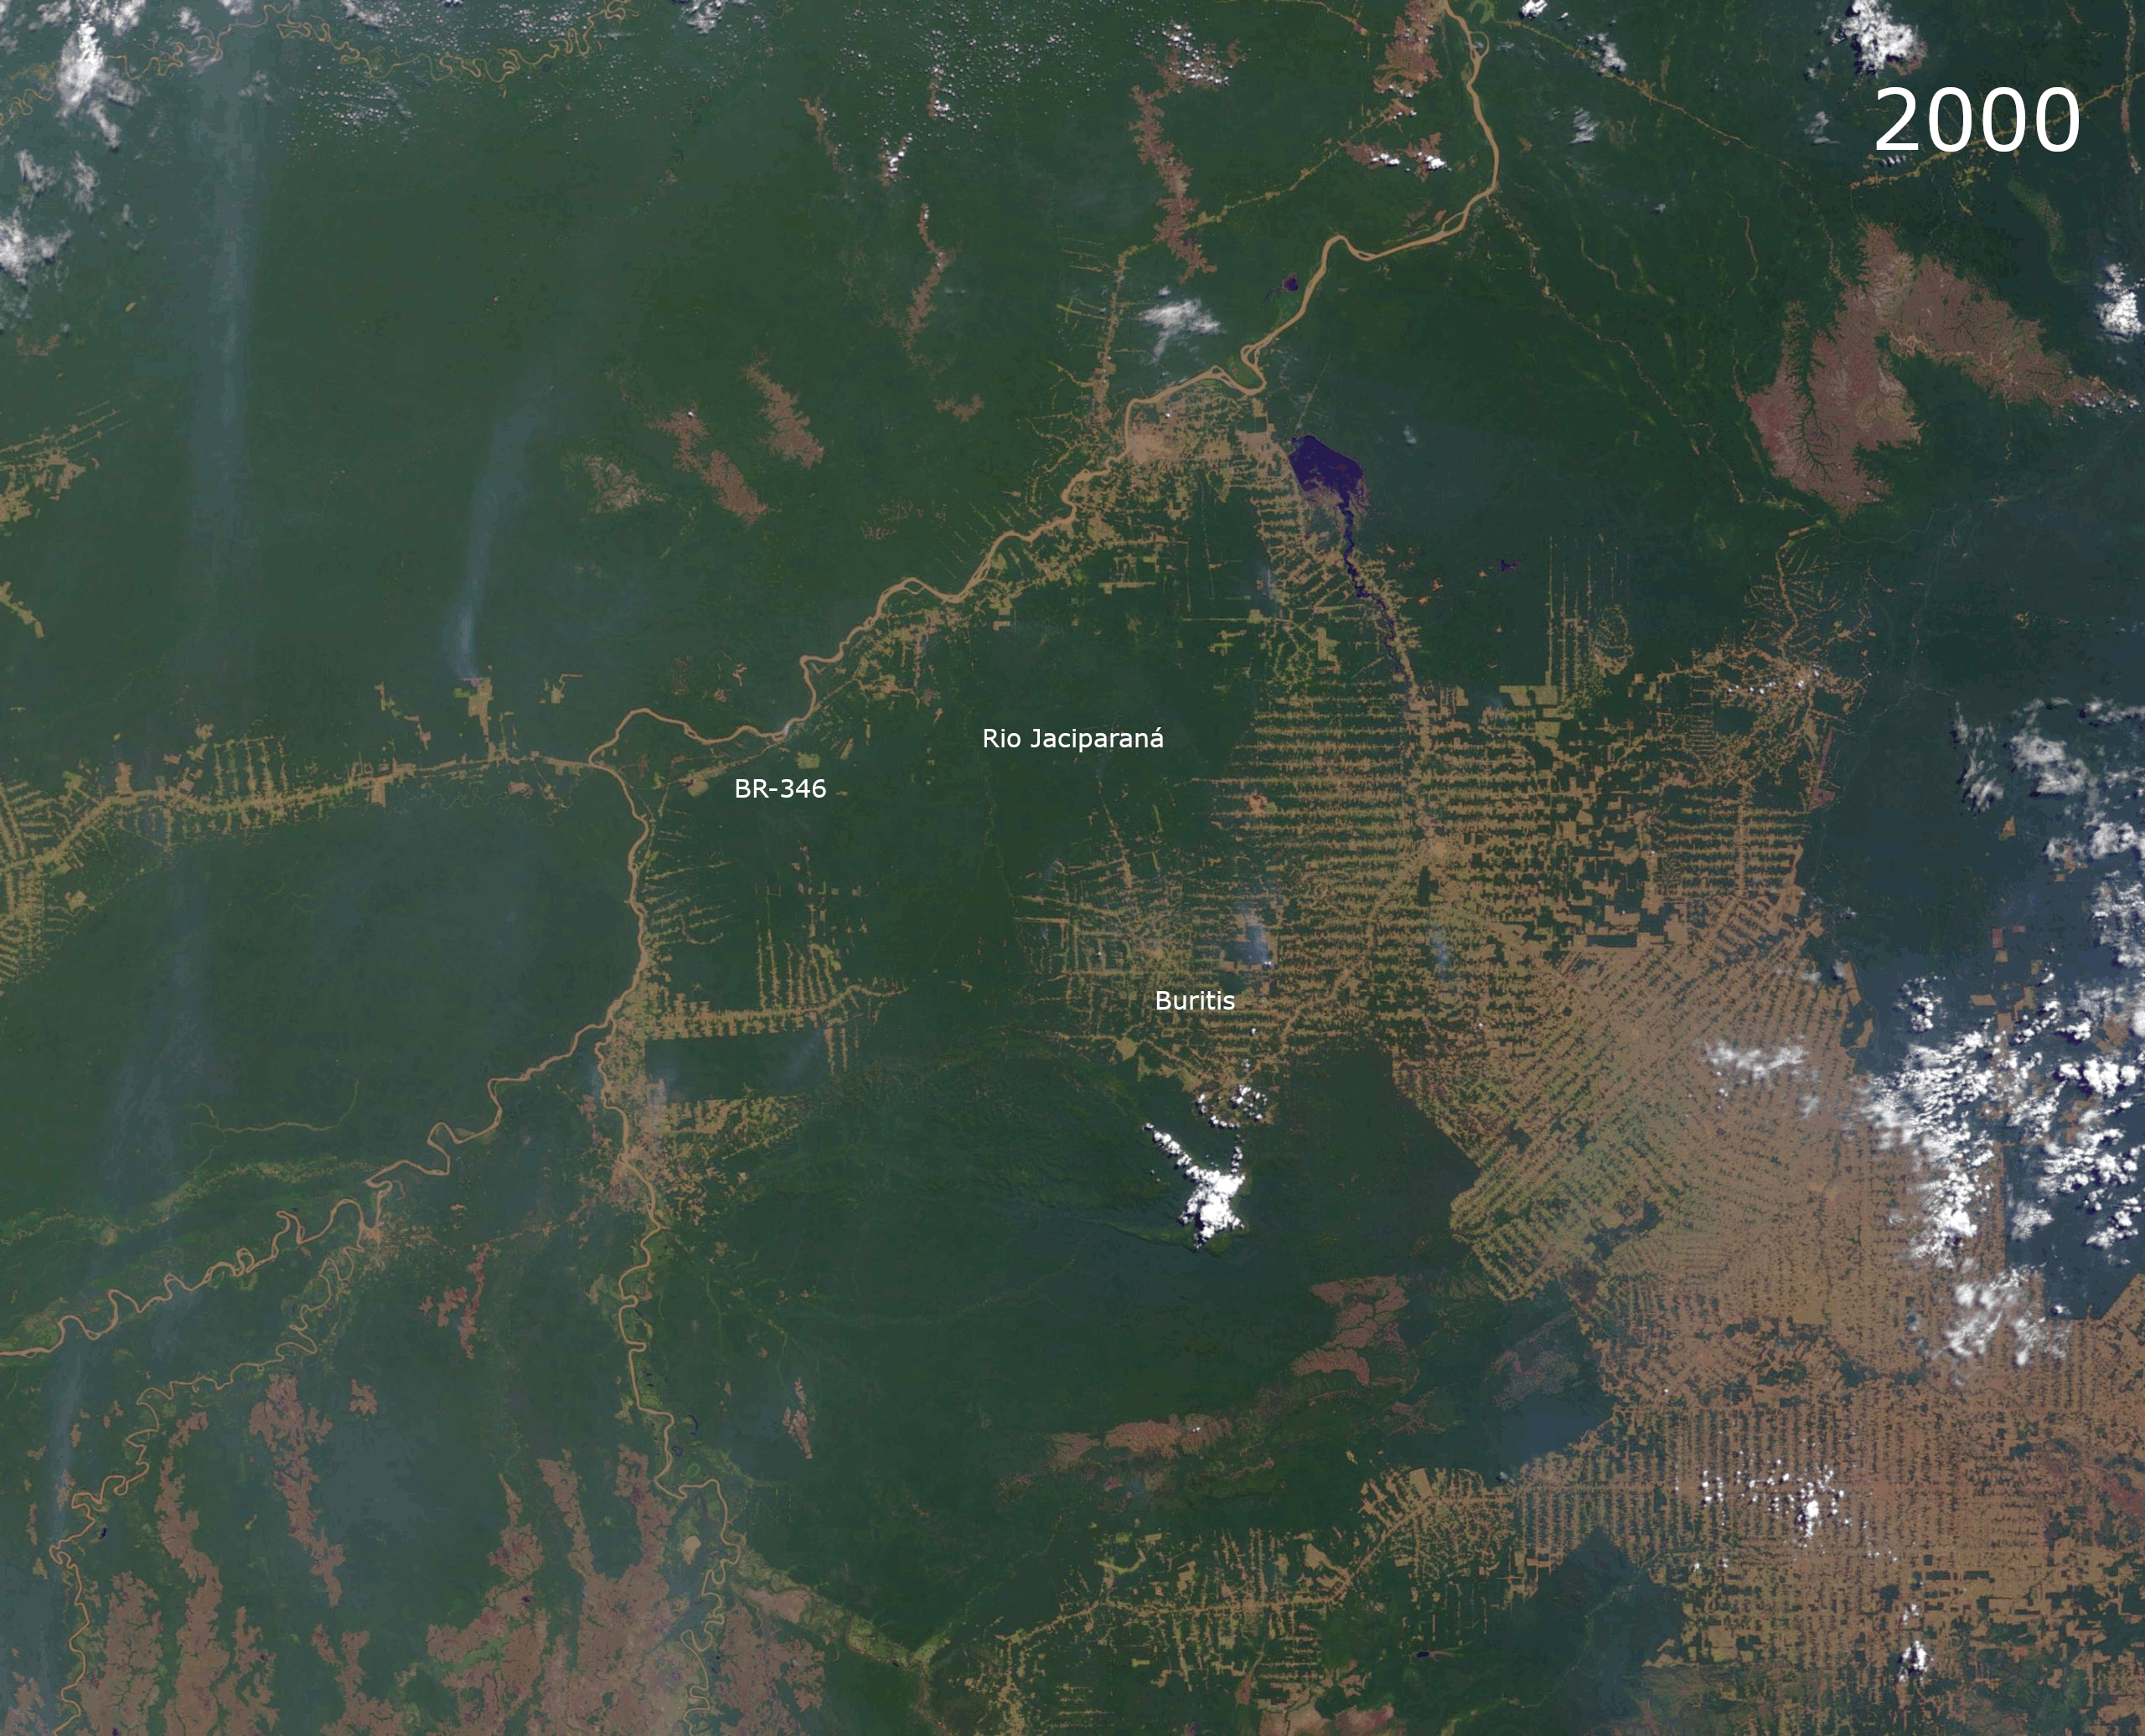 Regenwaldzerstörung in Rondonia 2000 bis 2012